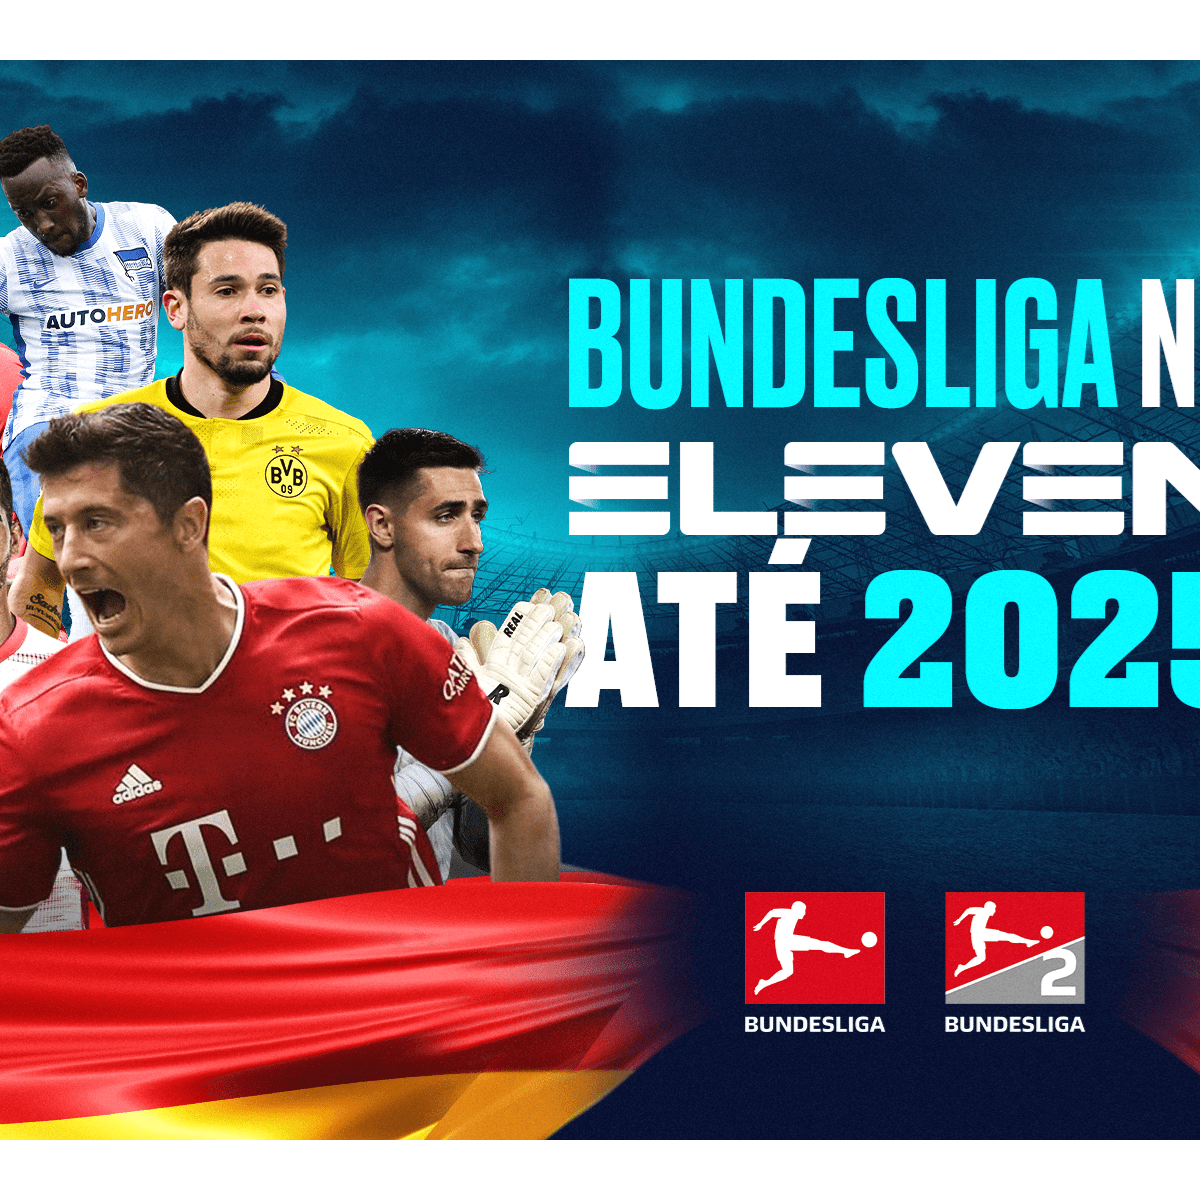 Começa hoje uma nova jornada da Bundesliga na Eleven Sports